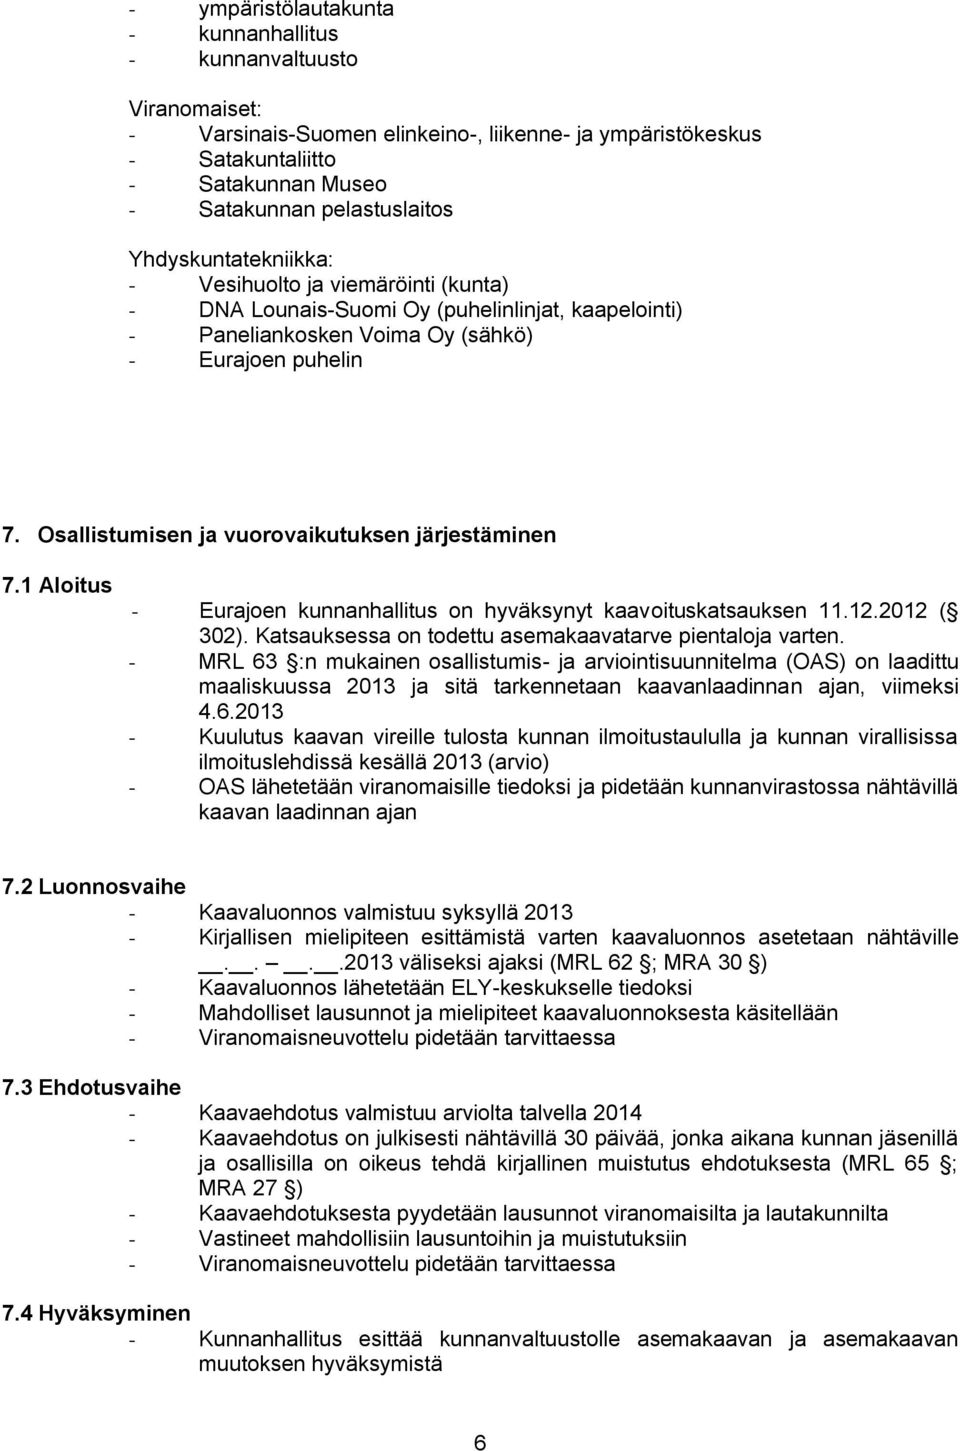 Osallistumisen ja vuorovaikutuksen järjestäminen 7.1 Aloitus - Eurajoen kunnanhallitus on hyväksynyt kaavoituskatsauksen 11.12.2012 ( 302). Katsauksessa on todettu asemakaavatarve pientaloja varten.